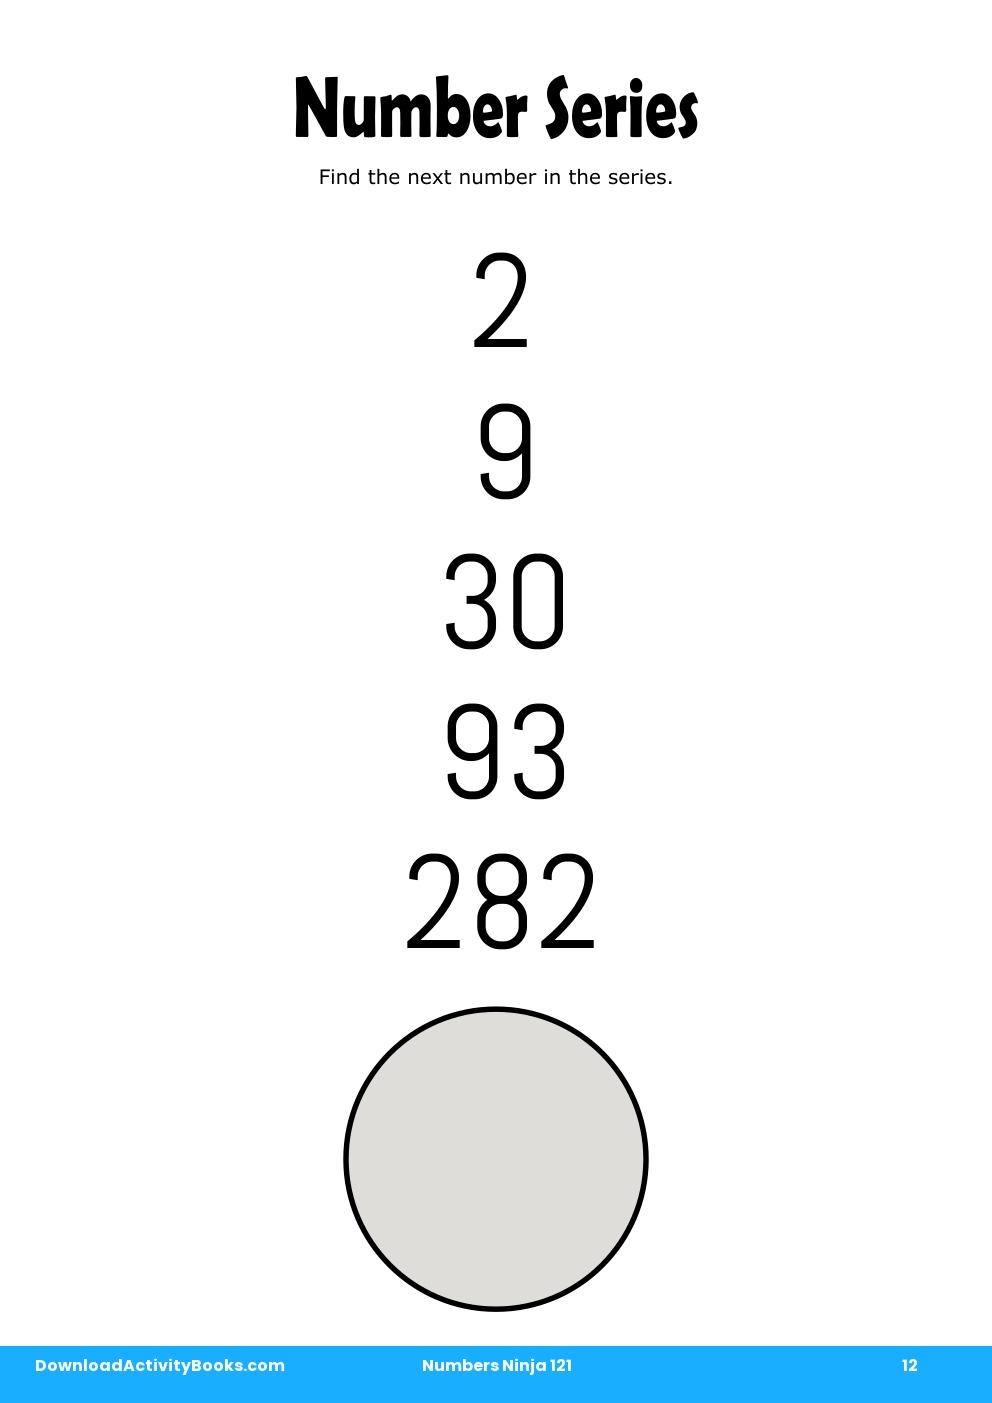 Number Series in Numbers Ninja 121